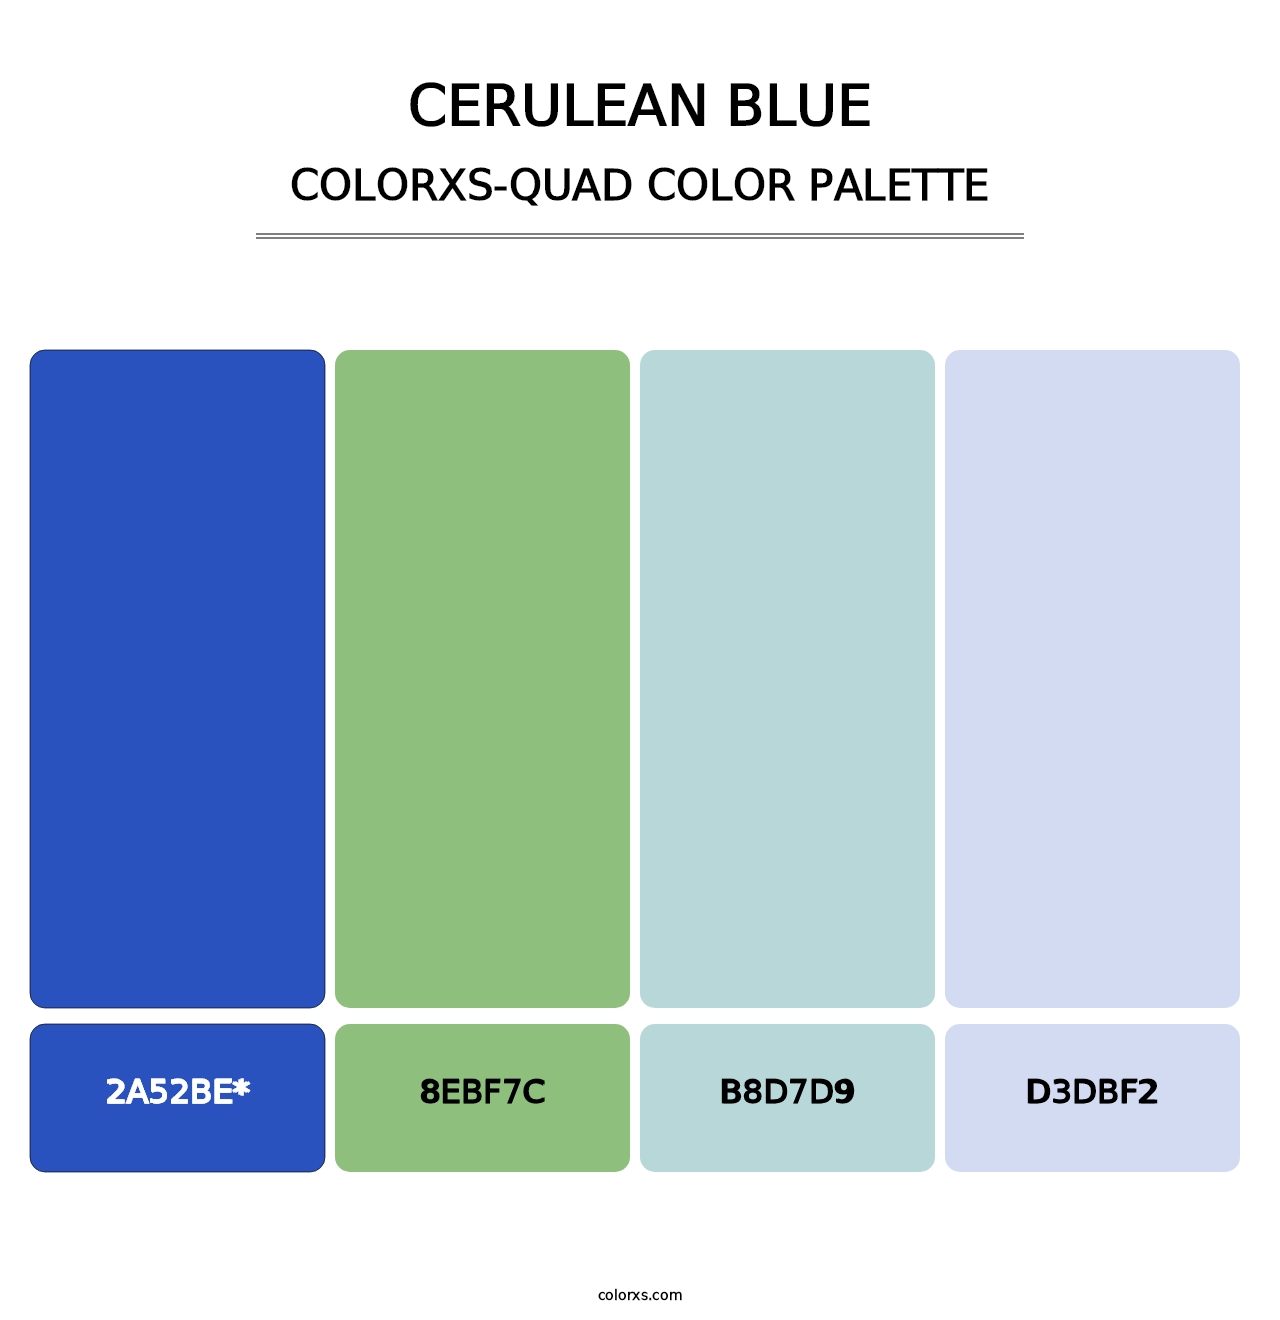 Cerulean blue - Colorxs Quad Palette